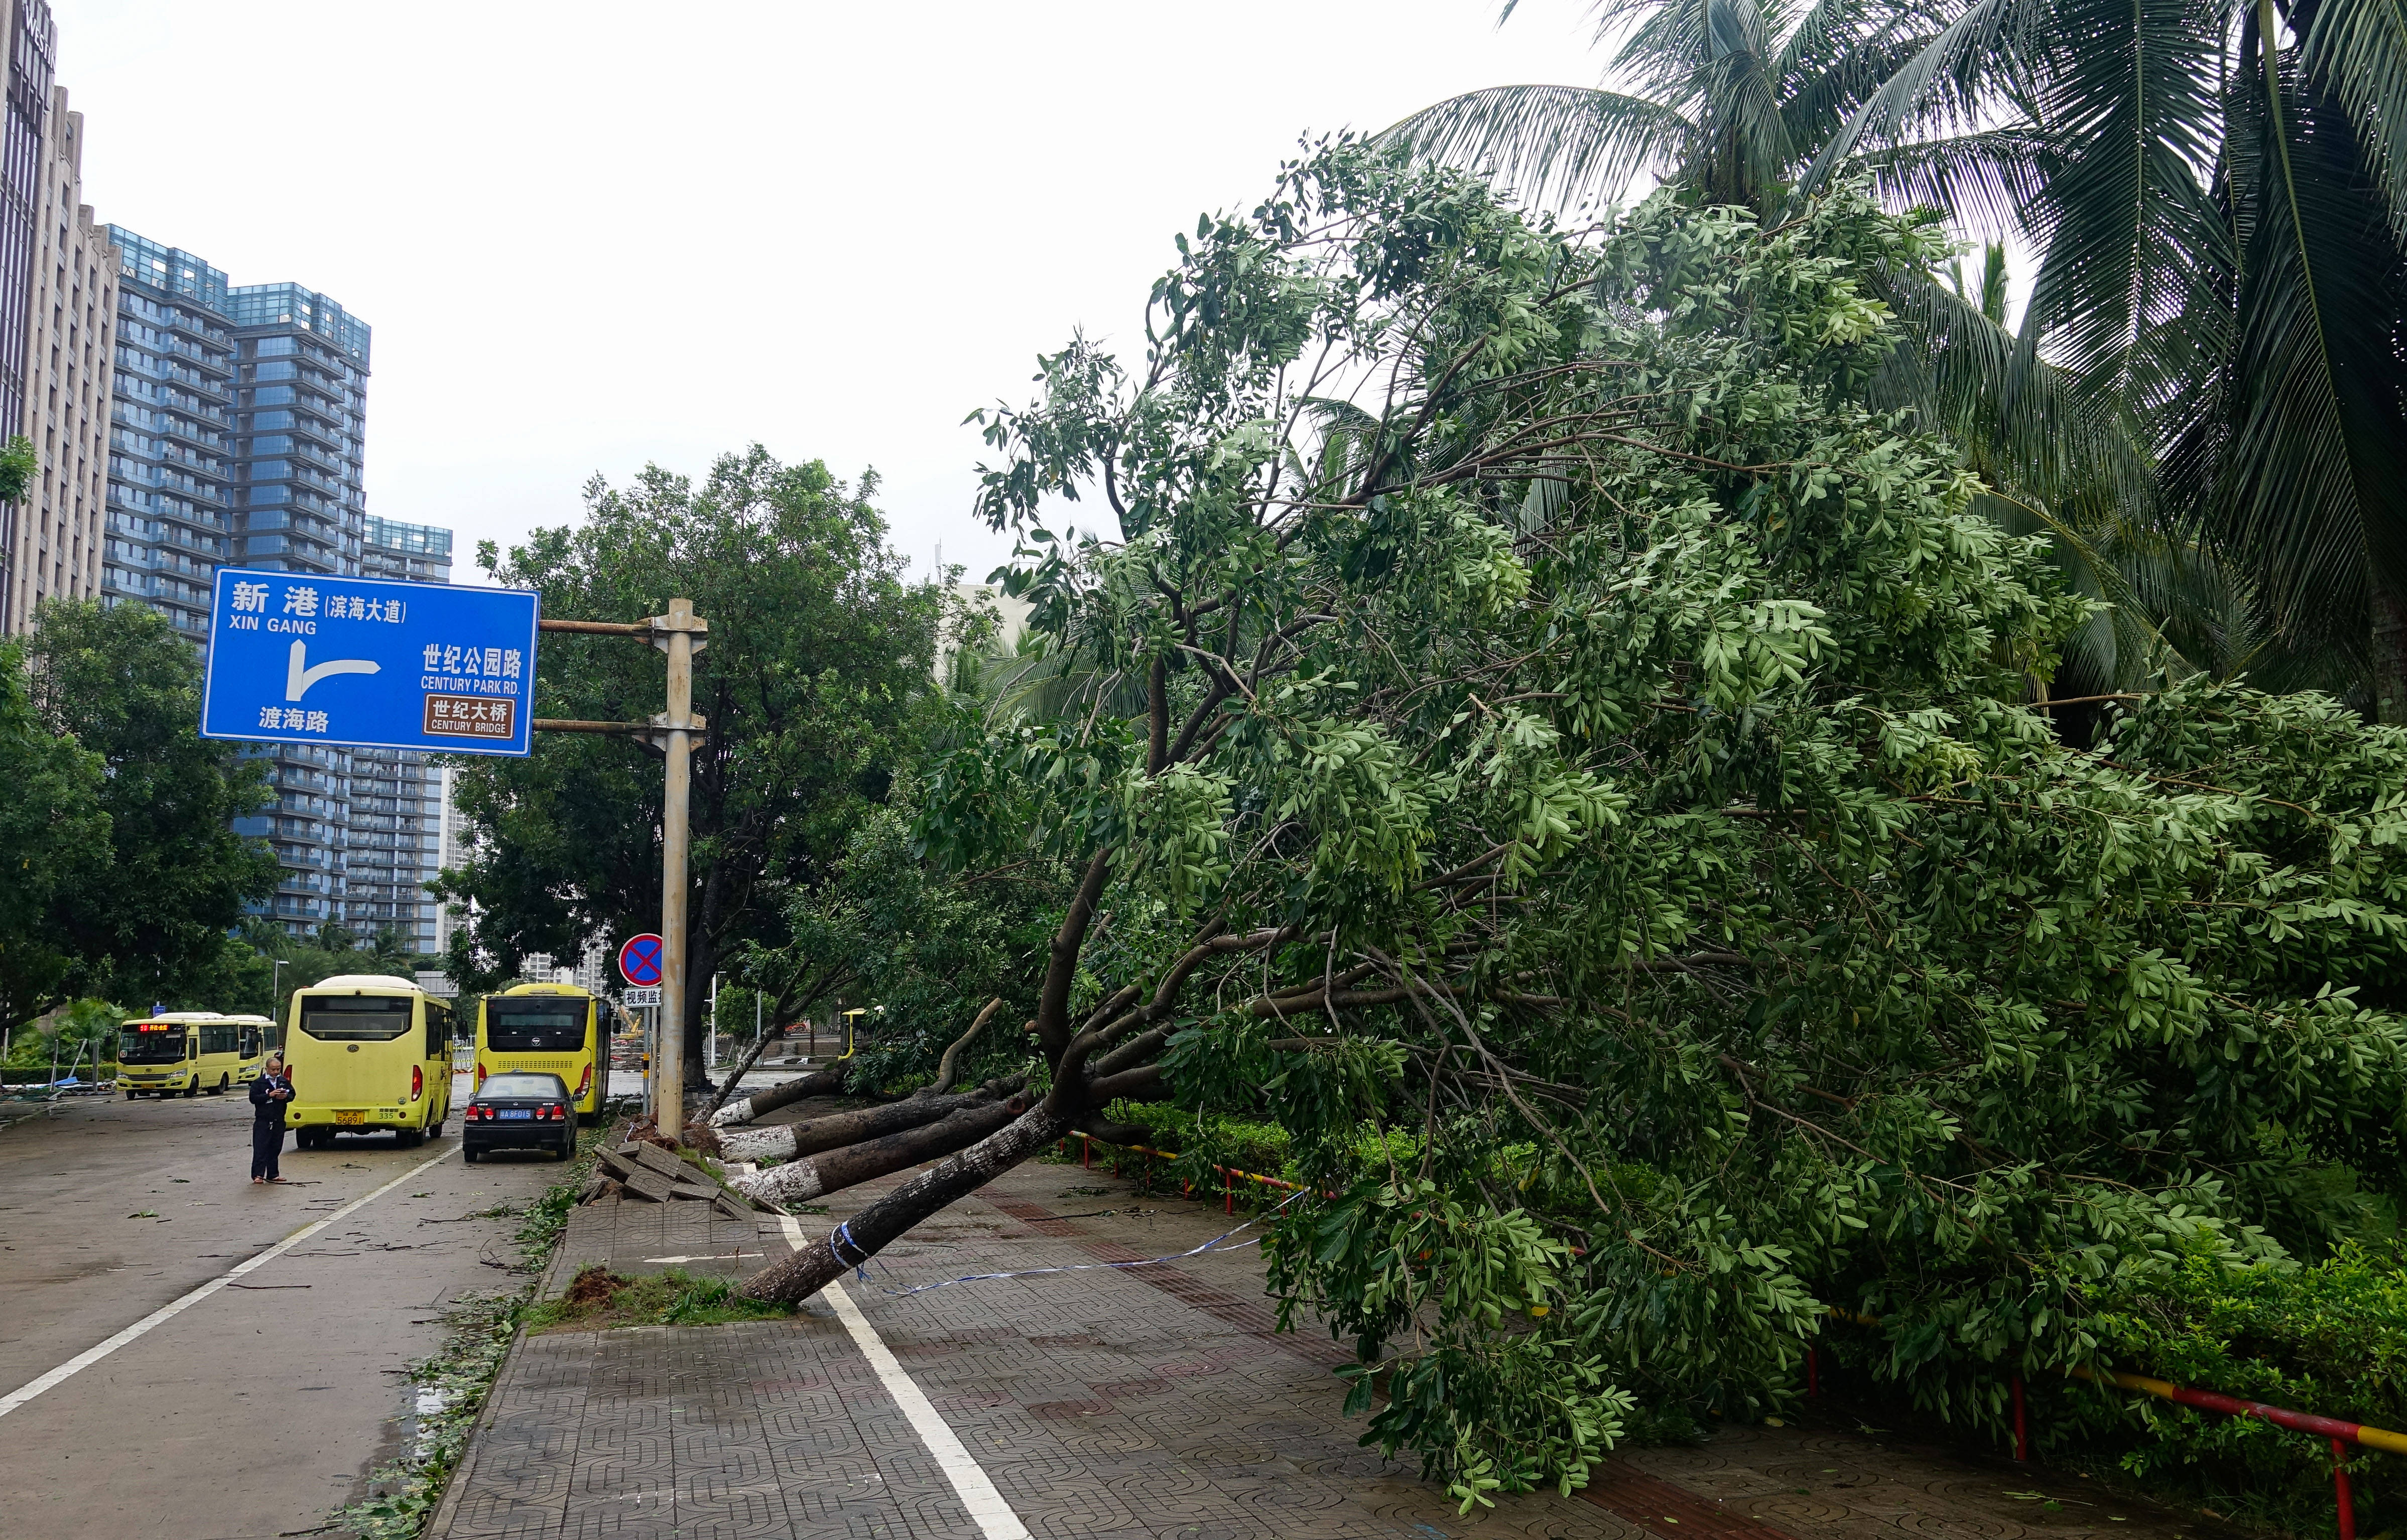 10月13日,在海口市渡海路,树木被台风"圆规"刮倒.